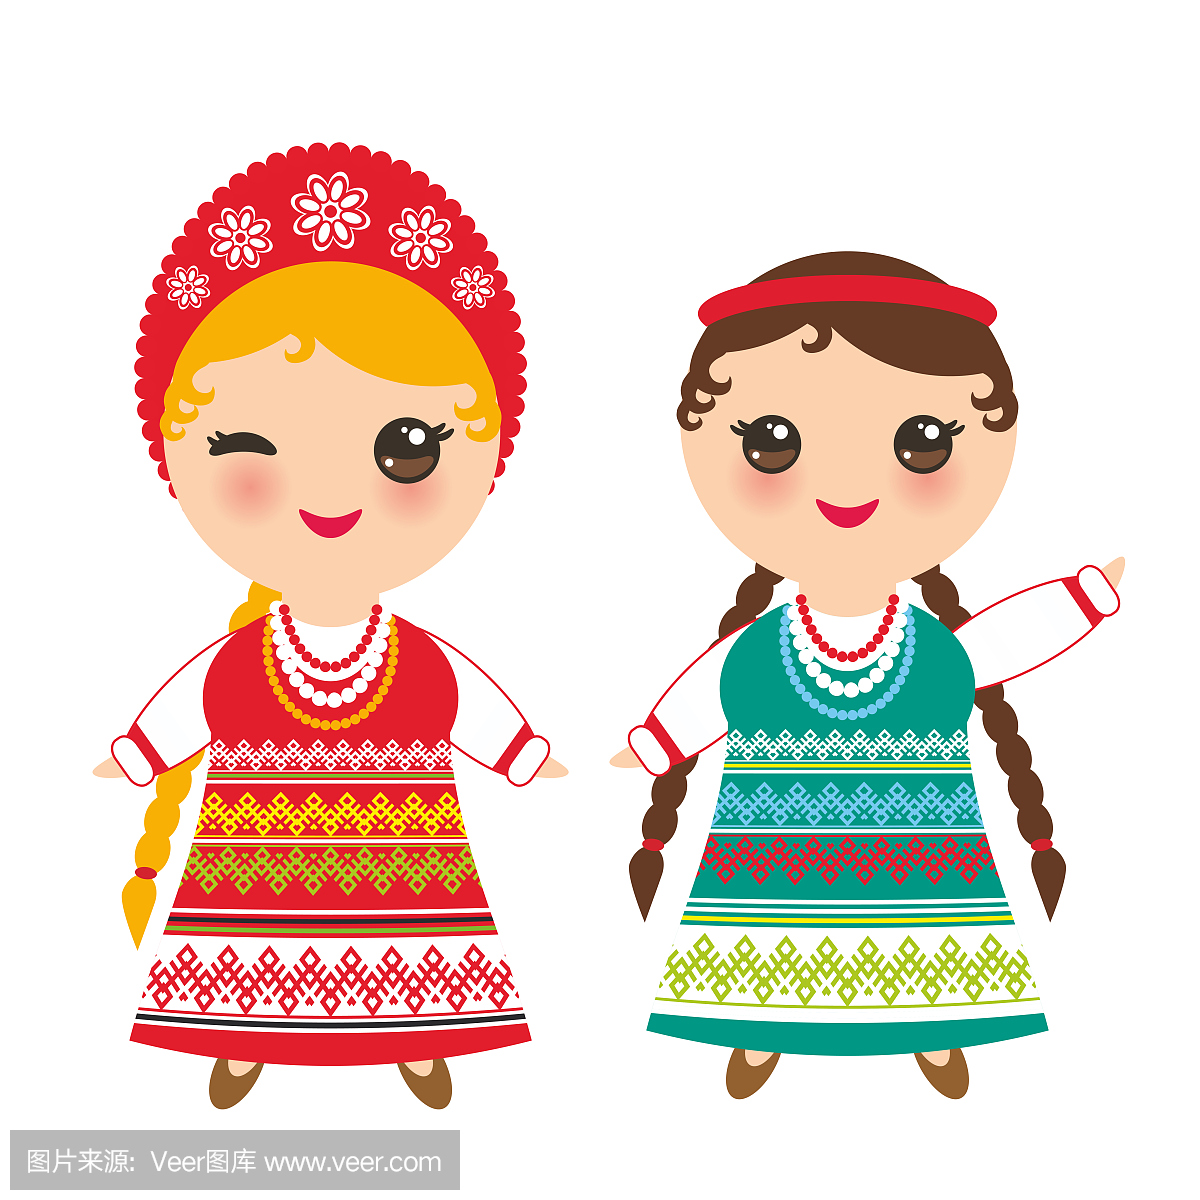 斯拉夫女孩在绿色红色裙和白色衬衫与刺绣,头